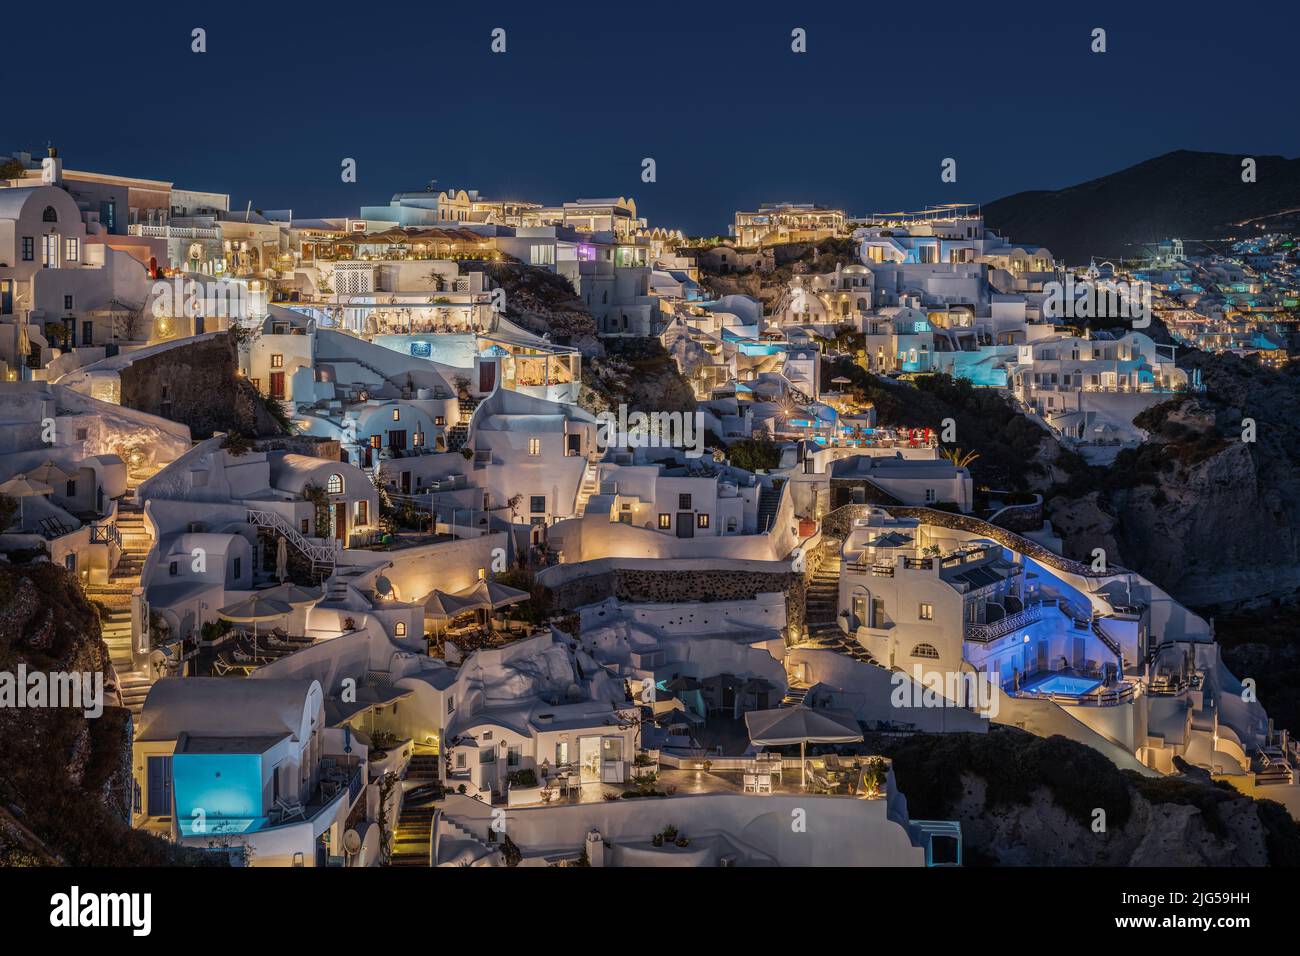 Vista panoramica di notte del villaggio di Oia a Santorini, con le sue case tipiche che ospitano suite e boutique hotel illuminati Foto Stock